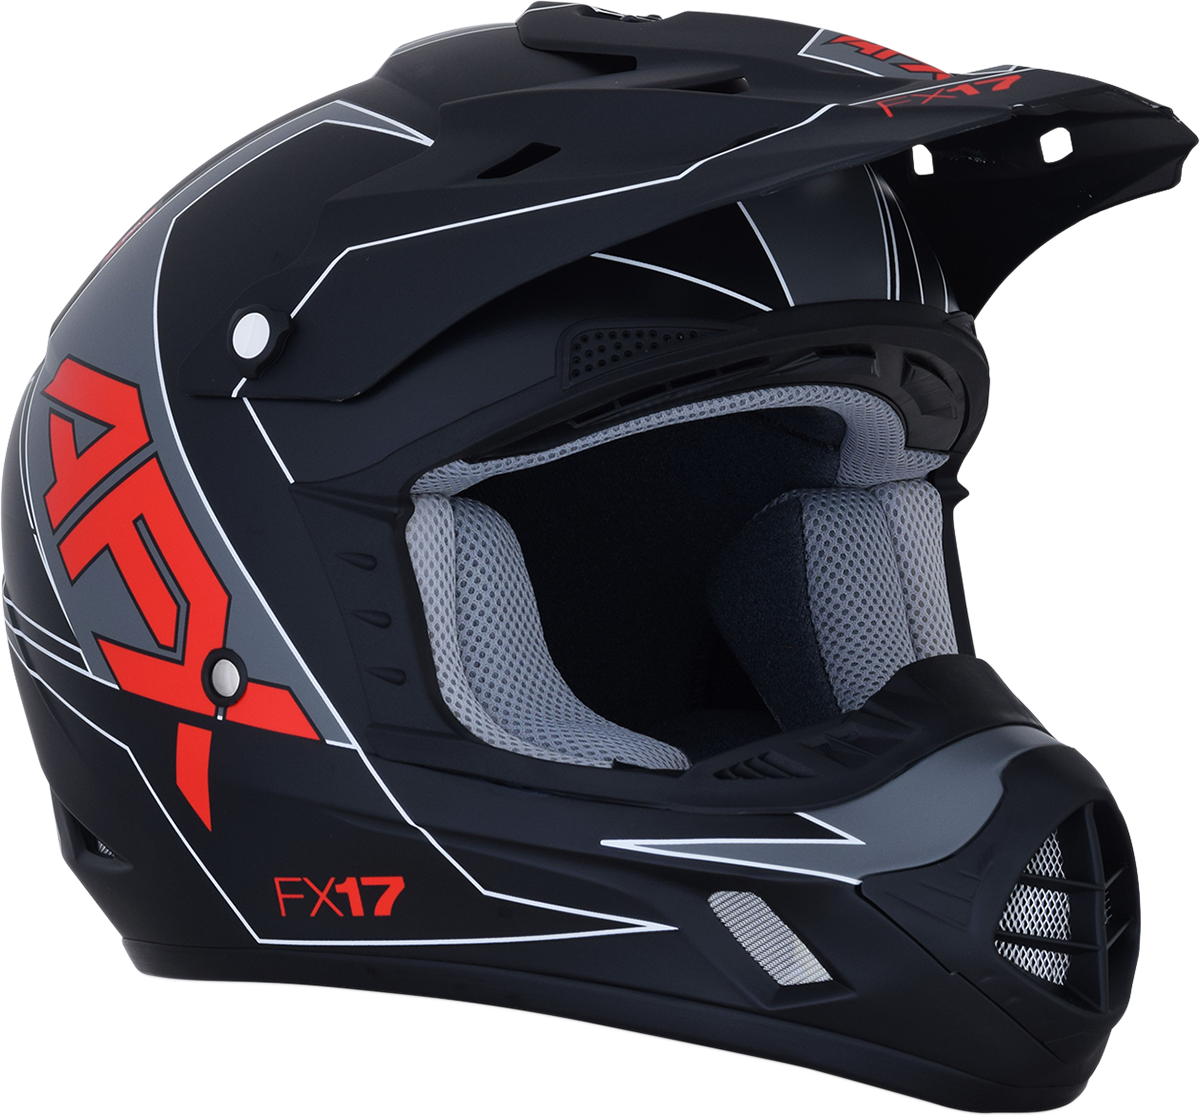 AFX FX-17 Helmet - Aced - Matte Black/Red - Large 0110-6486